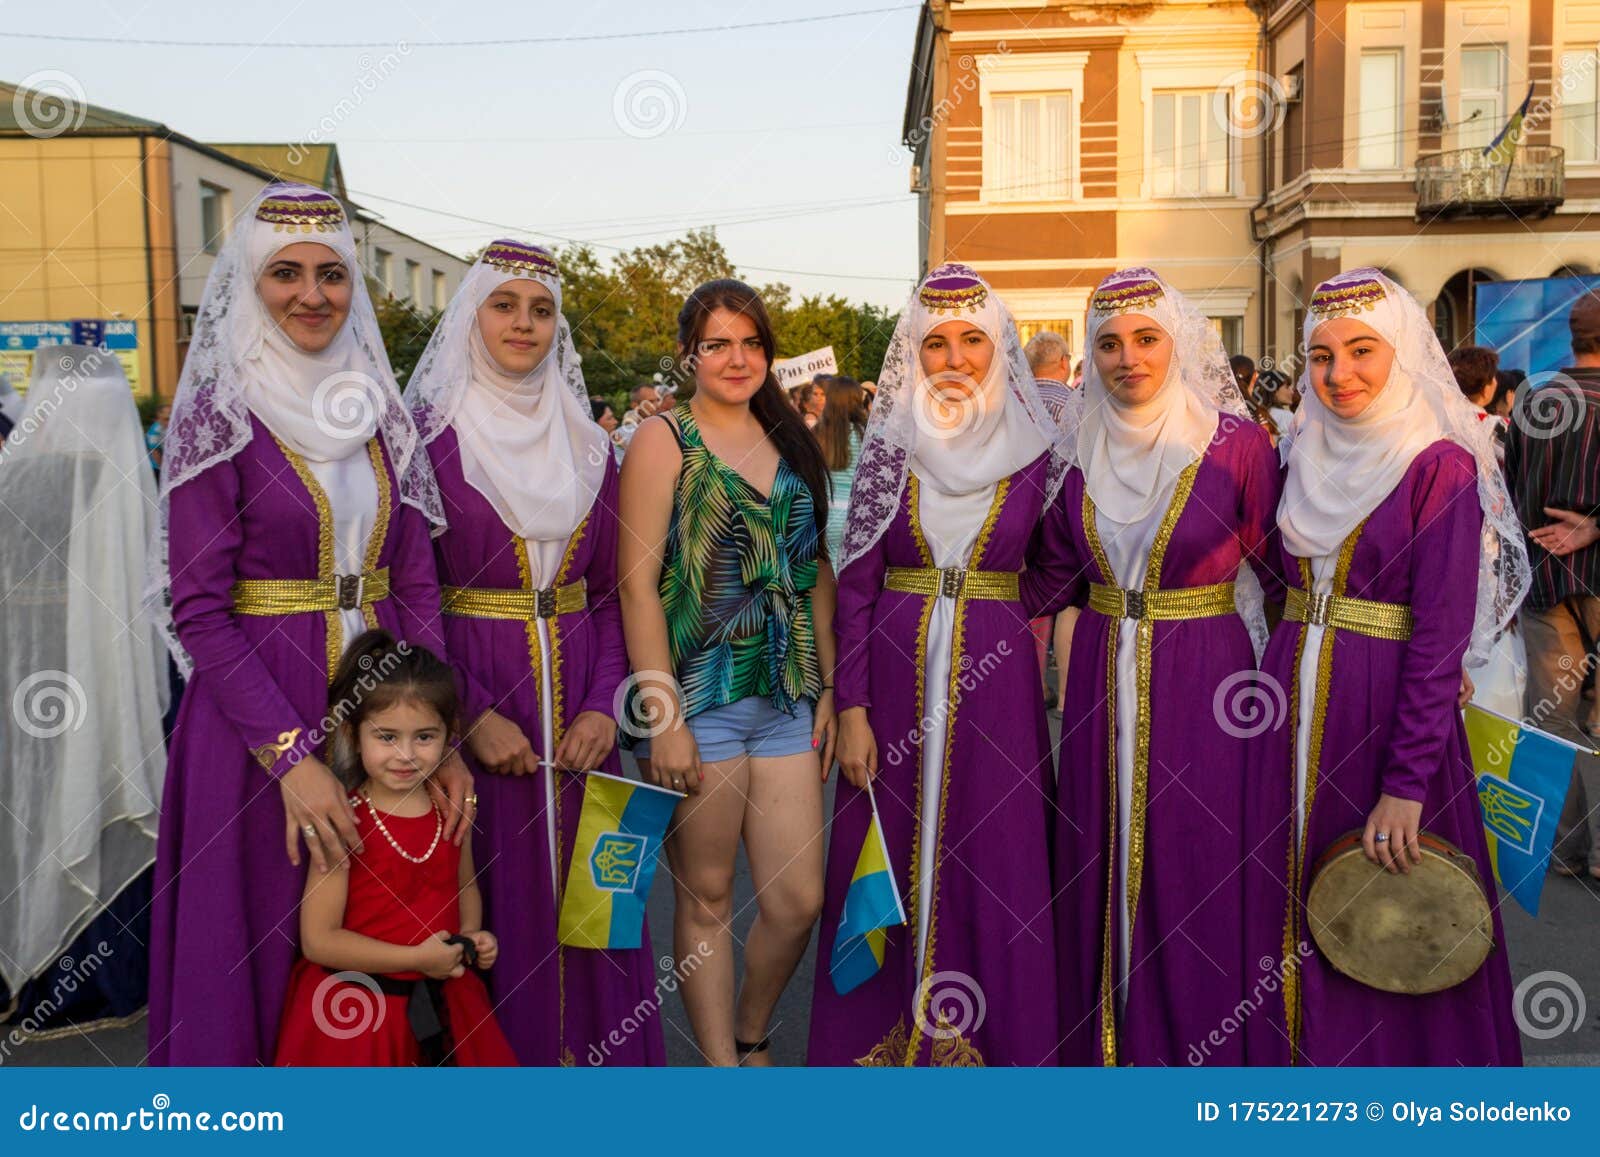 Pictures turkish girls Turkish Girls